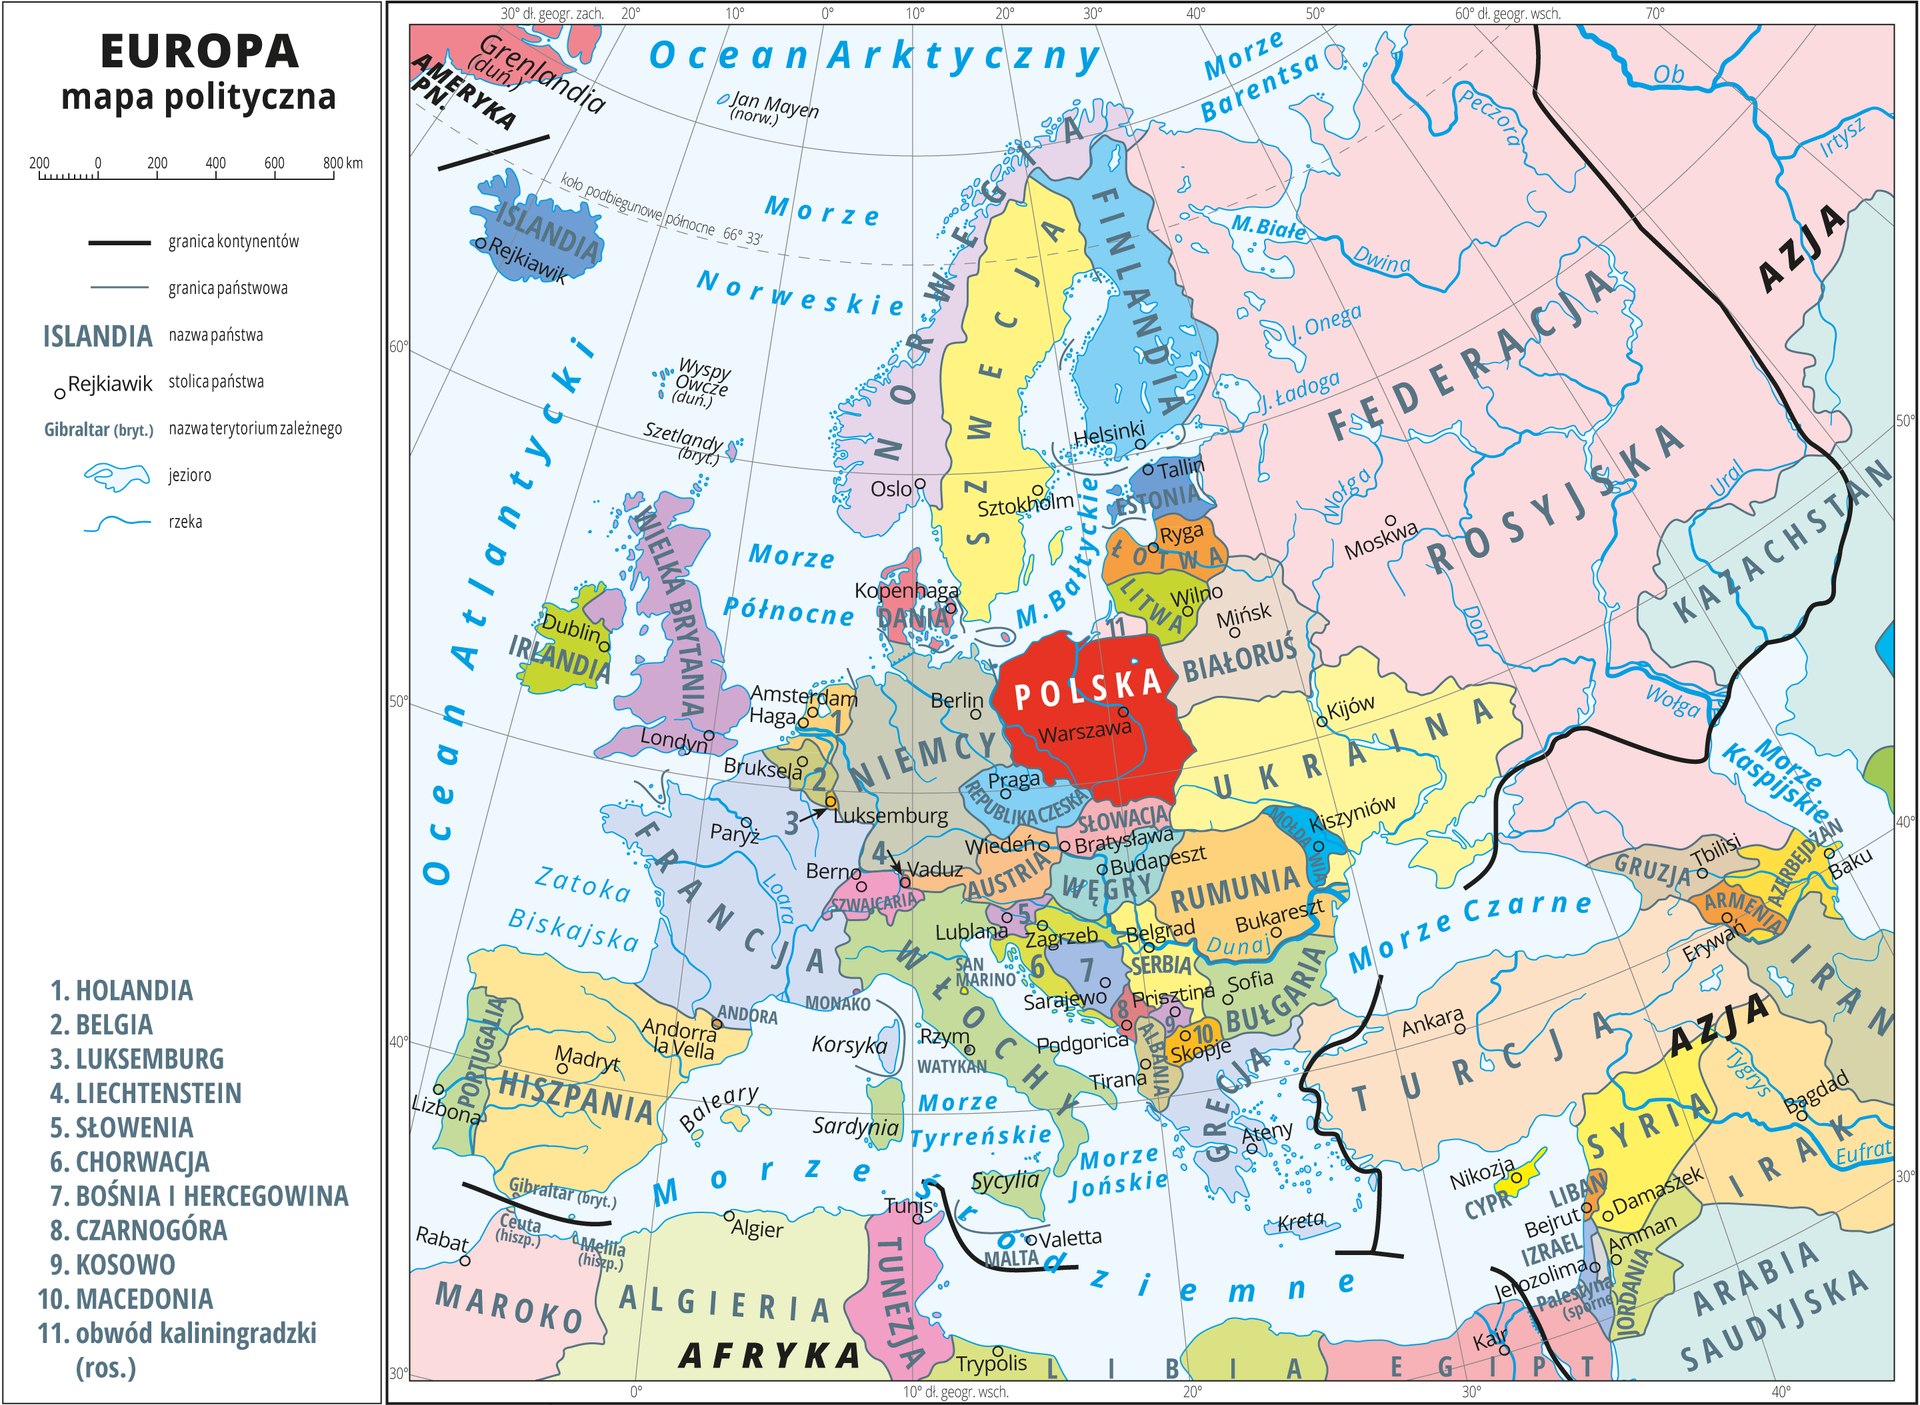 Ilustracja przedstawia mapę polityczną Europy. Państwa wyróżnione kolorami i opisane. Oznaczono i opisano stolice. Morza zaznaczono kolorem niebieskim i opisano. Mapa pokryta jest równoleżnikami i południkami, które opisano w białej ramce dookoła mapy, co dziesięć stopni.